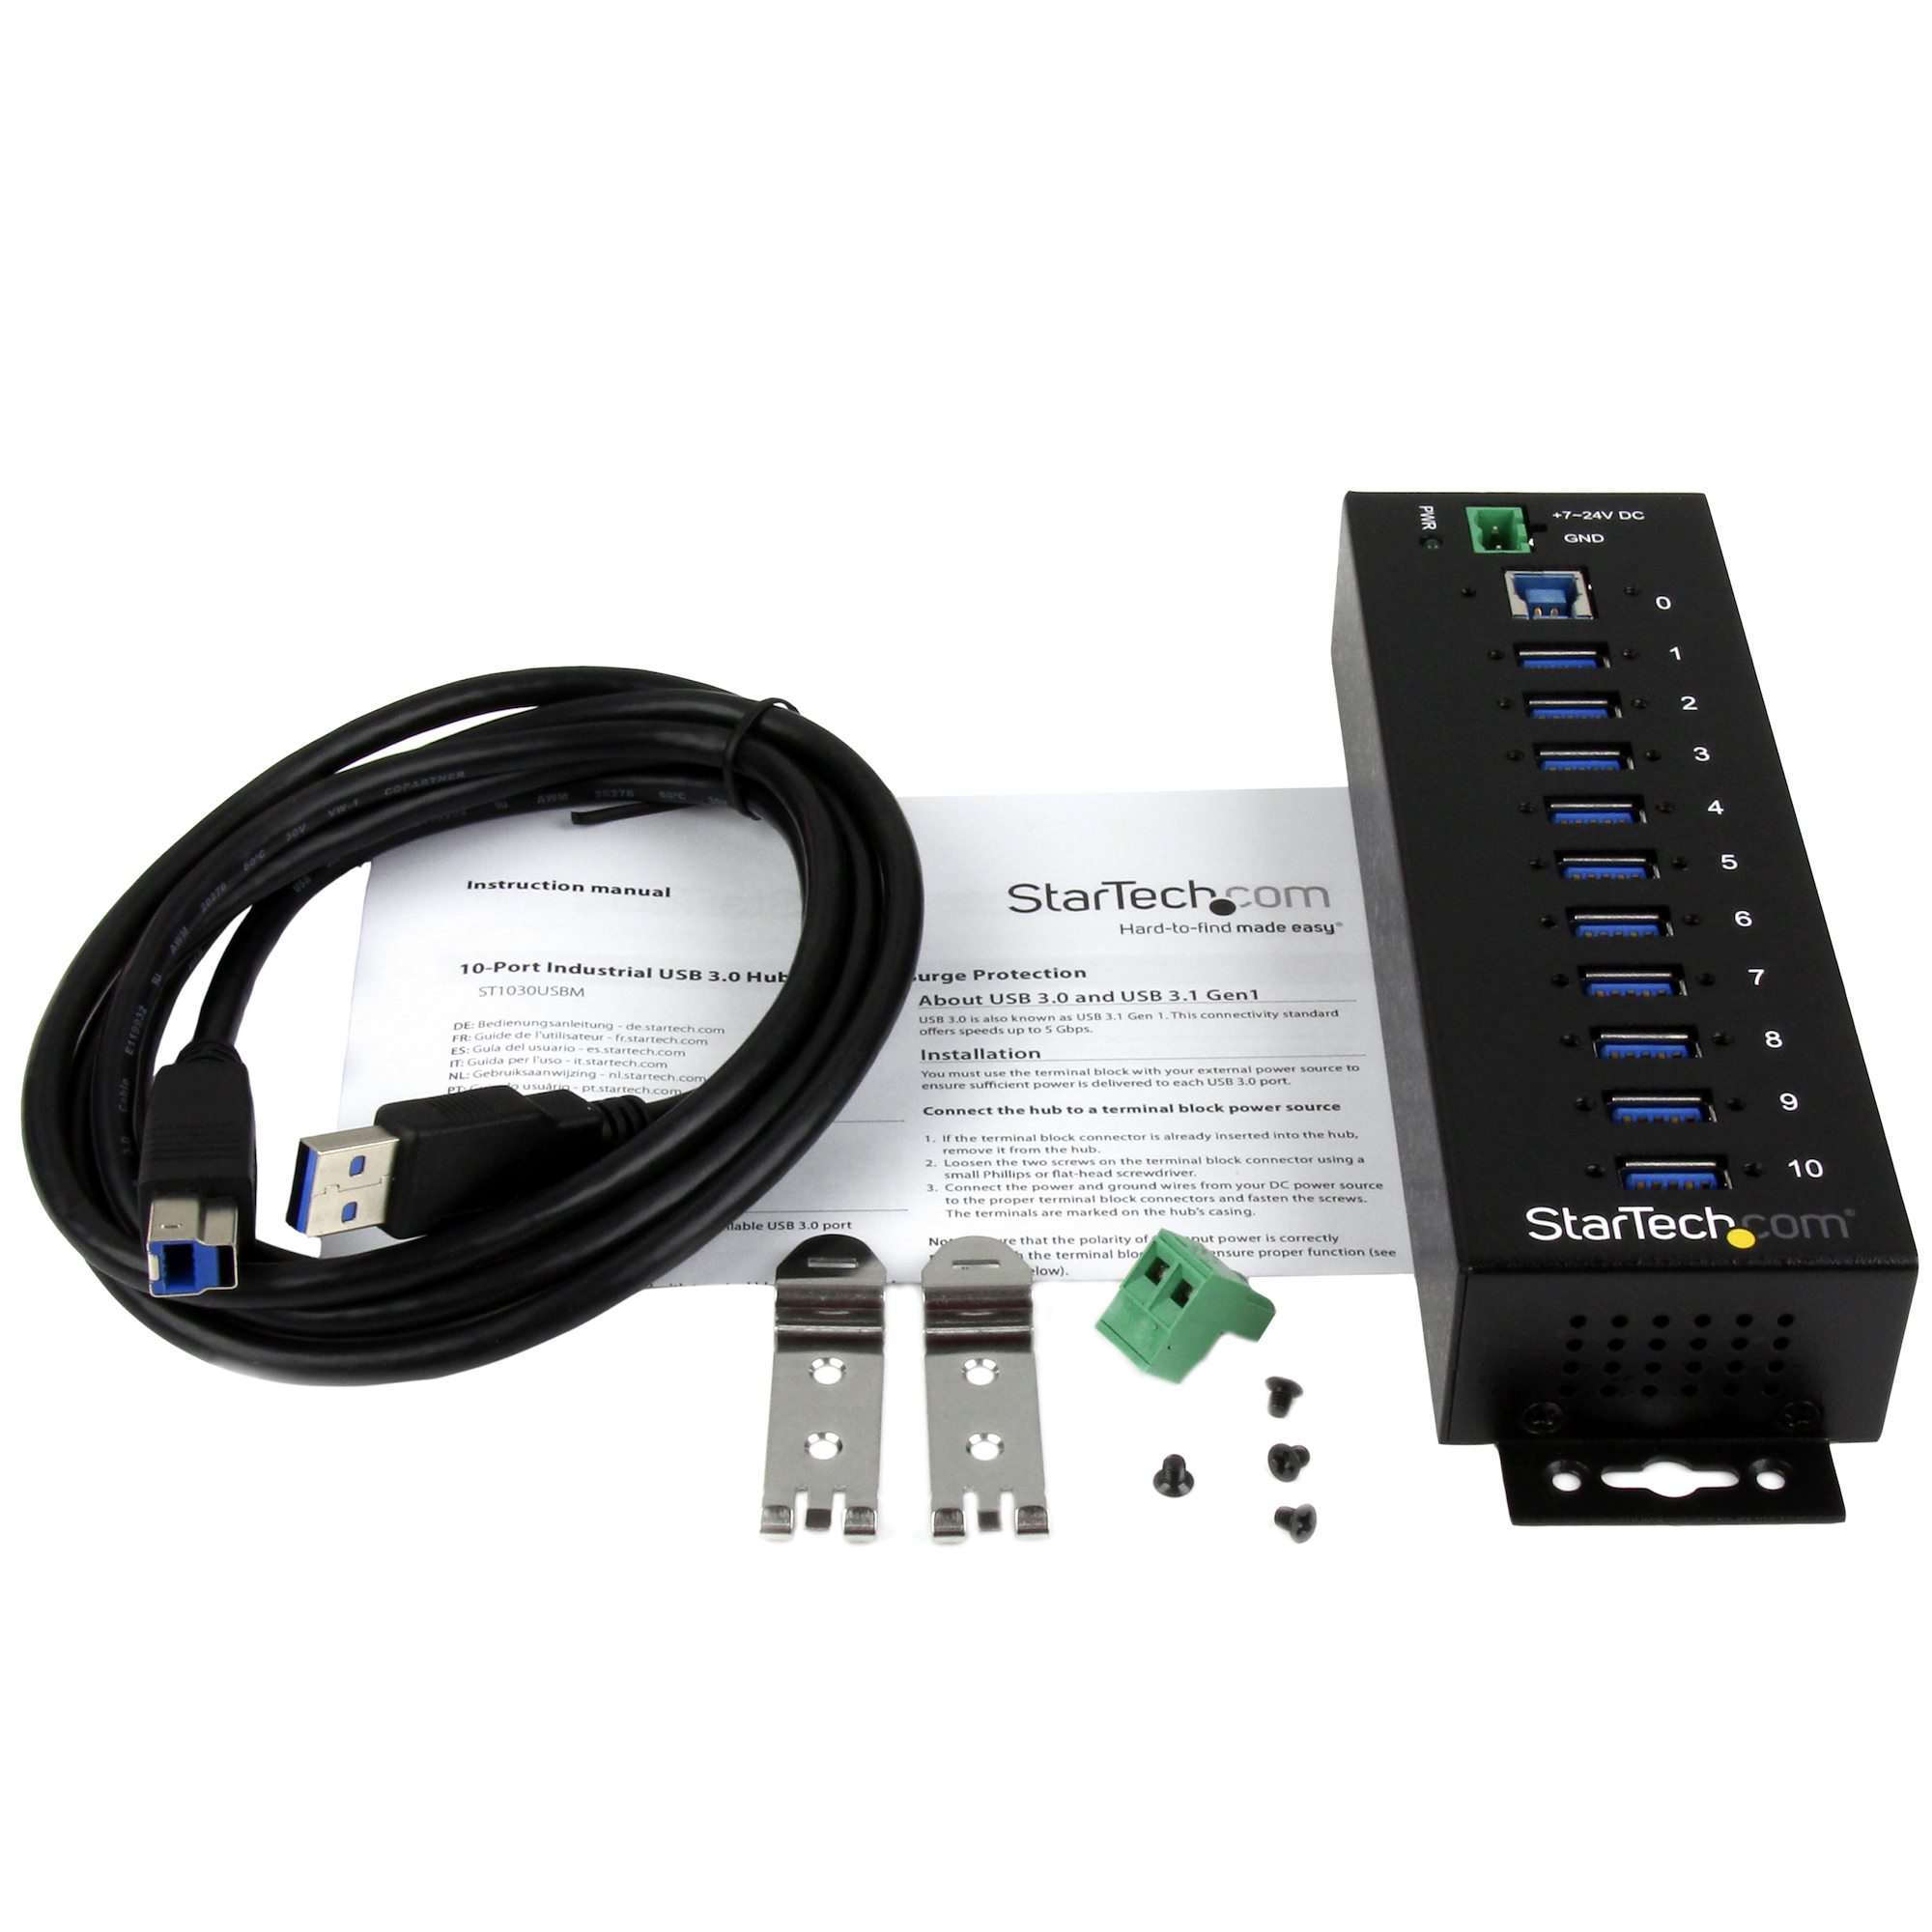 10ポート産業用USB 3.0ハブ ウォールマウント対応 - StarTech.com